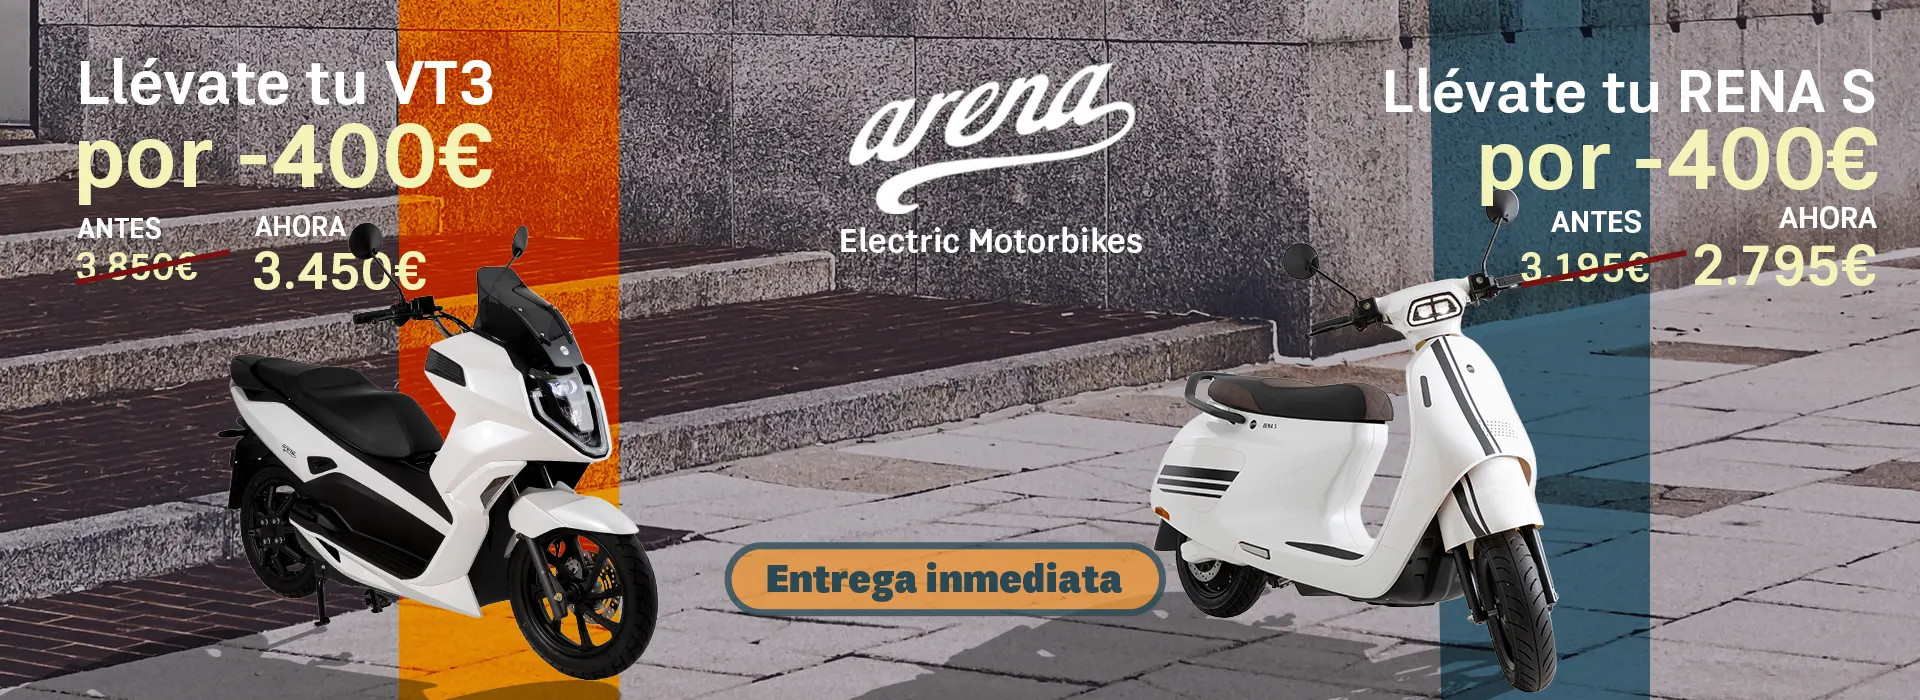 Arena motos eléctricas Llévate tu VT3 - RENA S por -400€